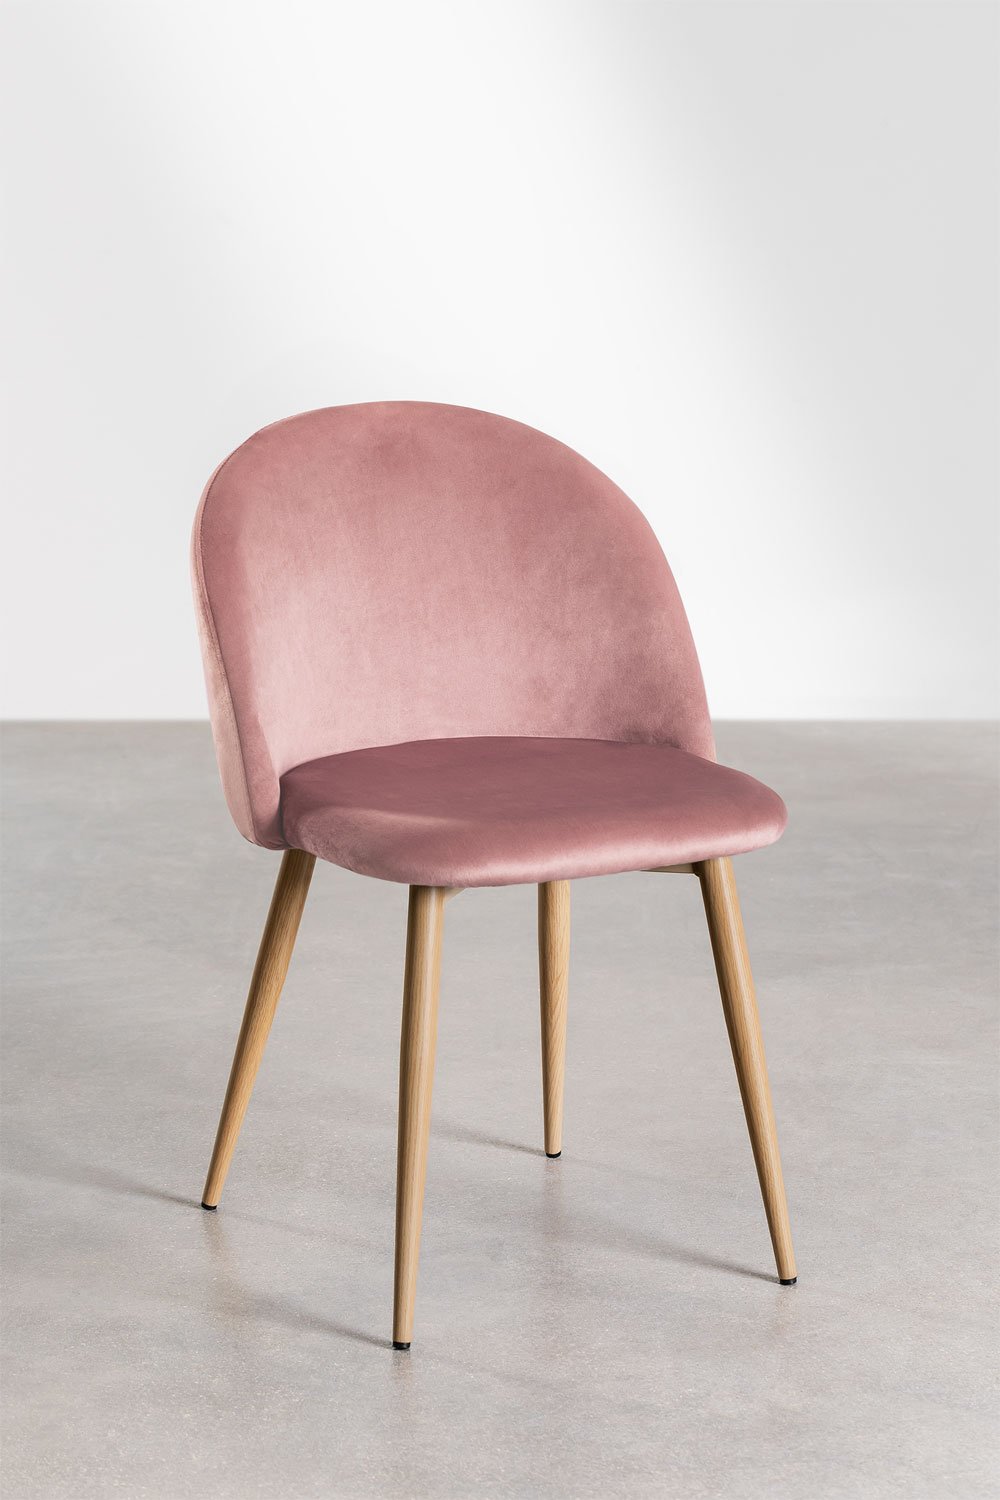 silla nórdica de terciopelo en color rosa - NORDK